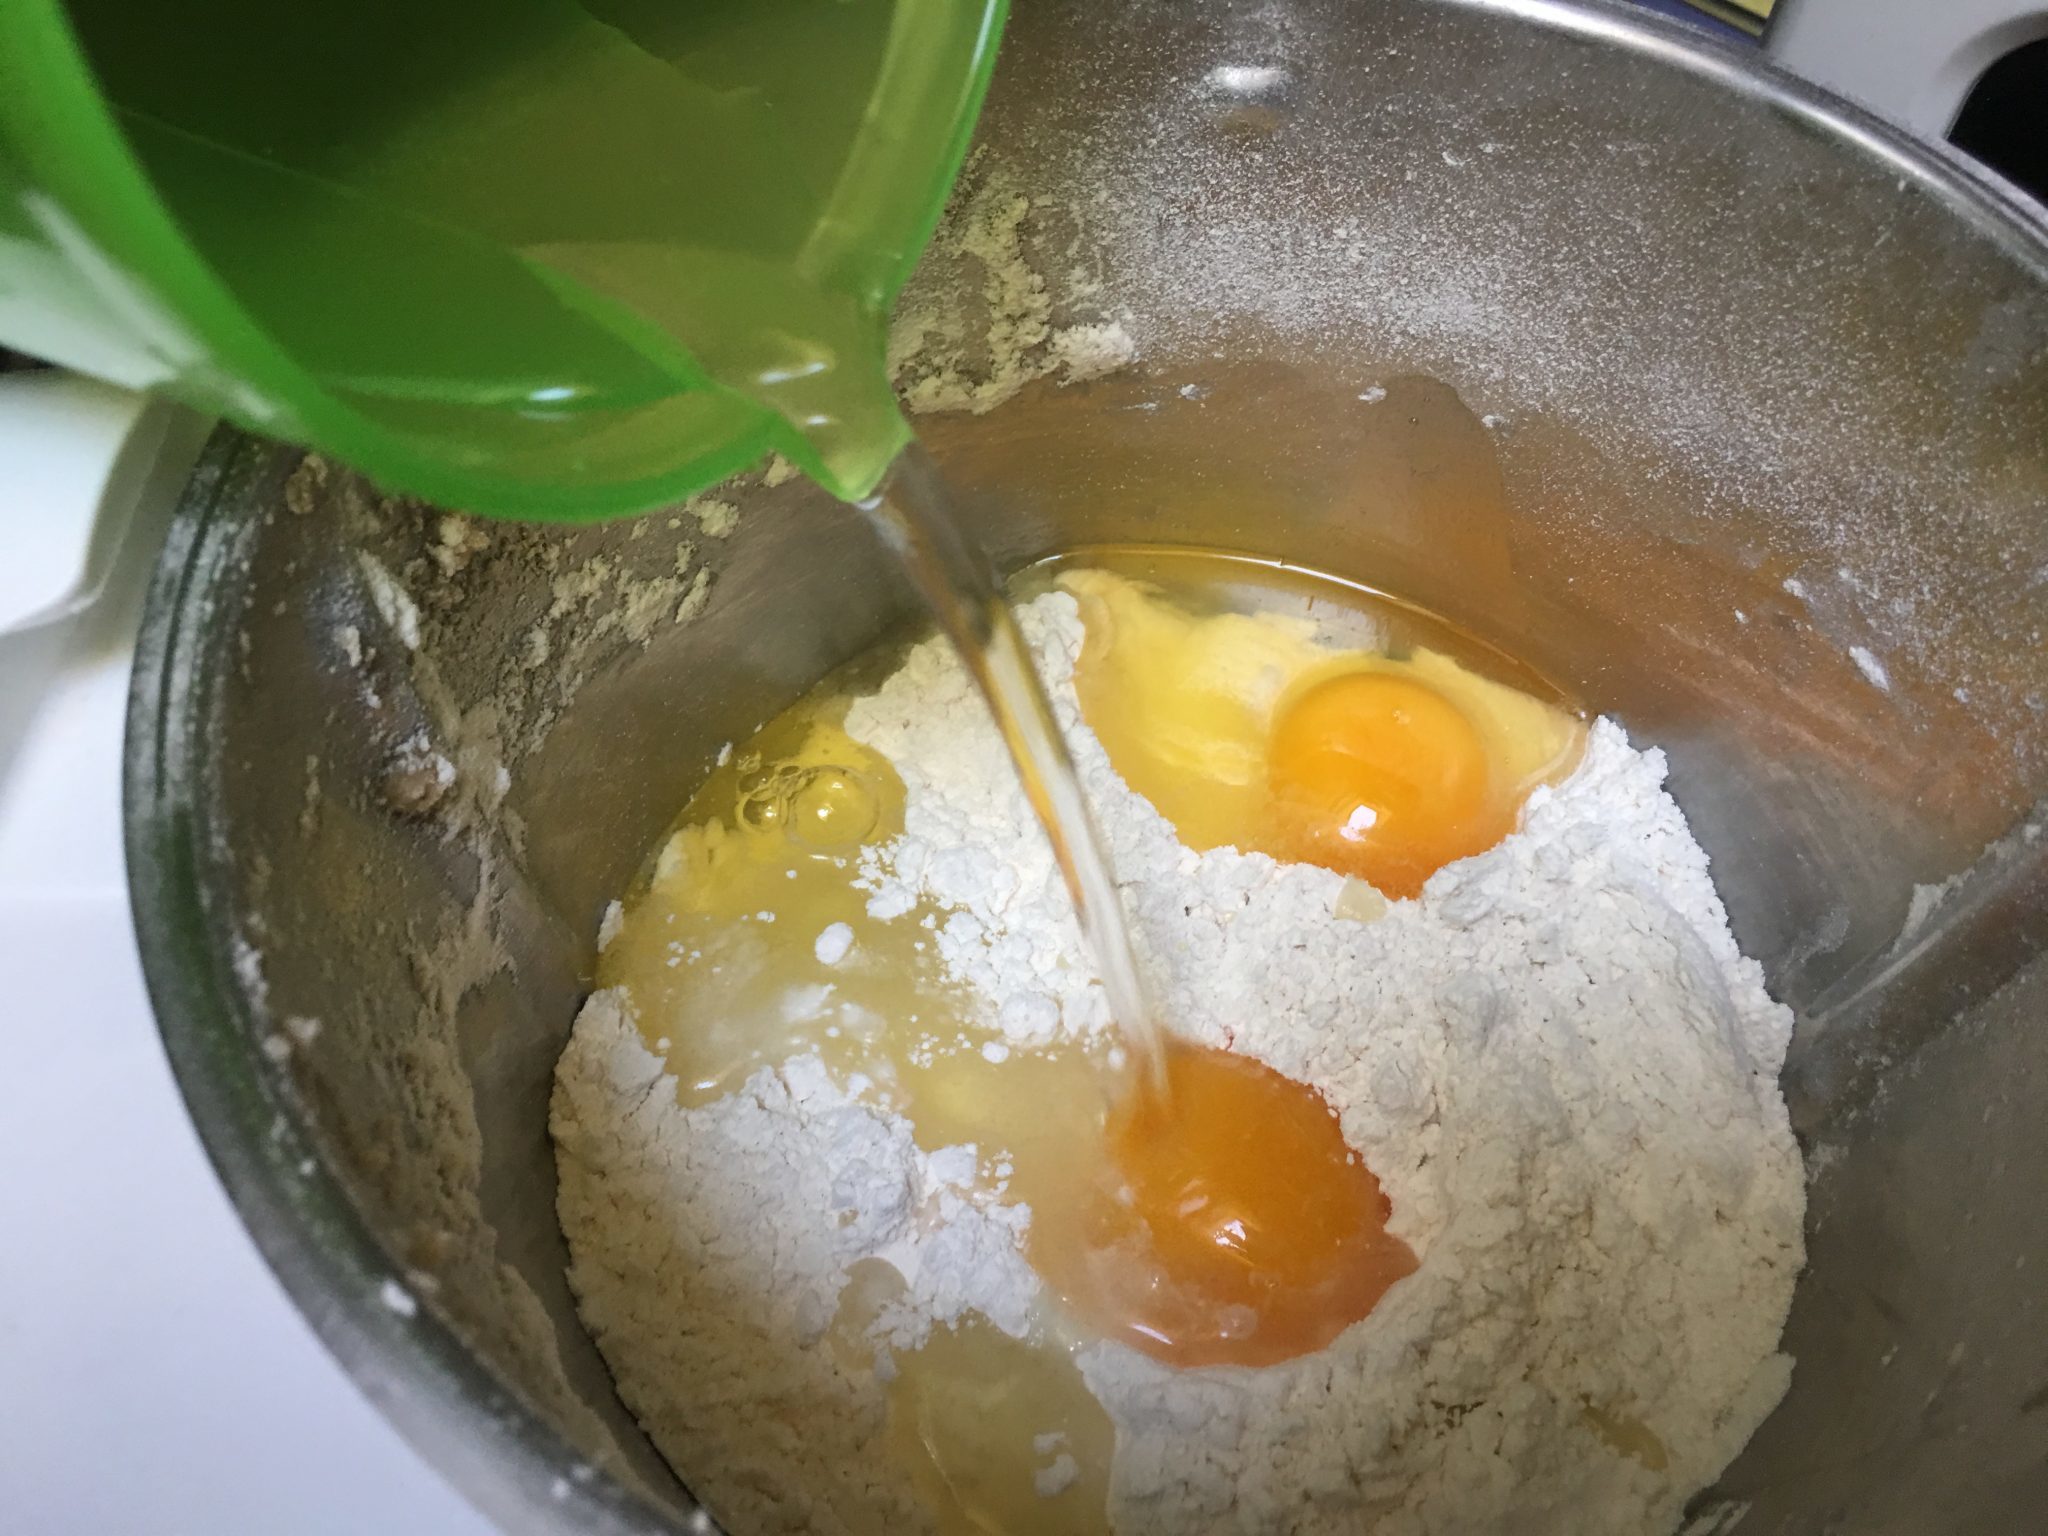 Pan brioche - le uova e l'acqua nella farina